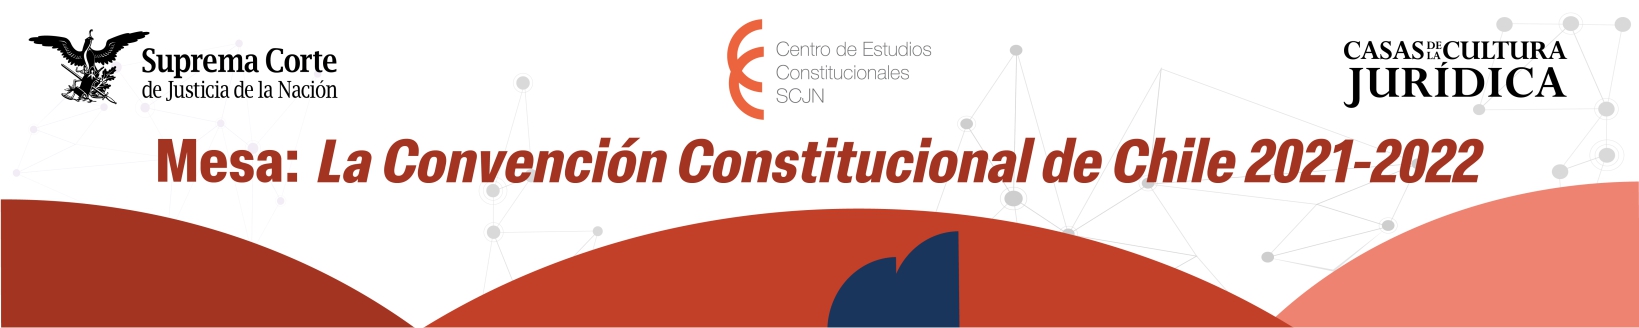 Banner de la Mesa: La Convención Constitucional de Chile 2021-2022